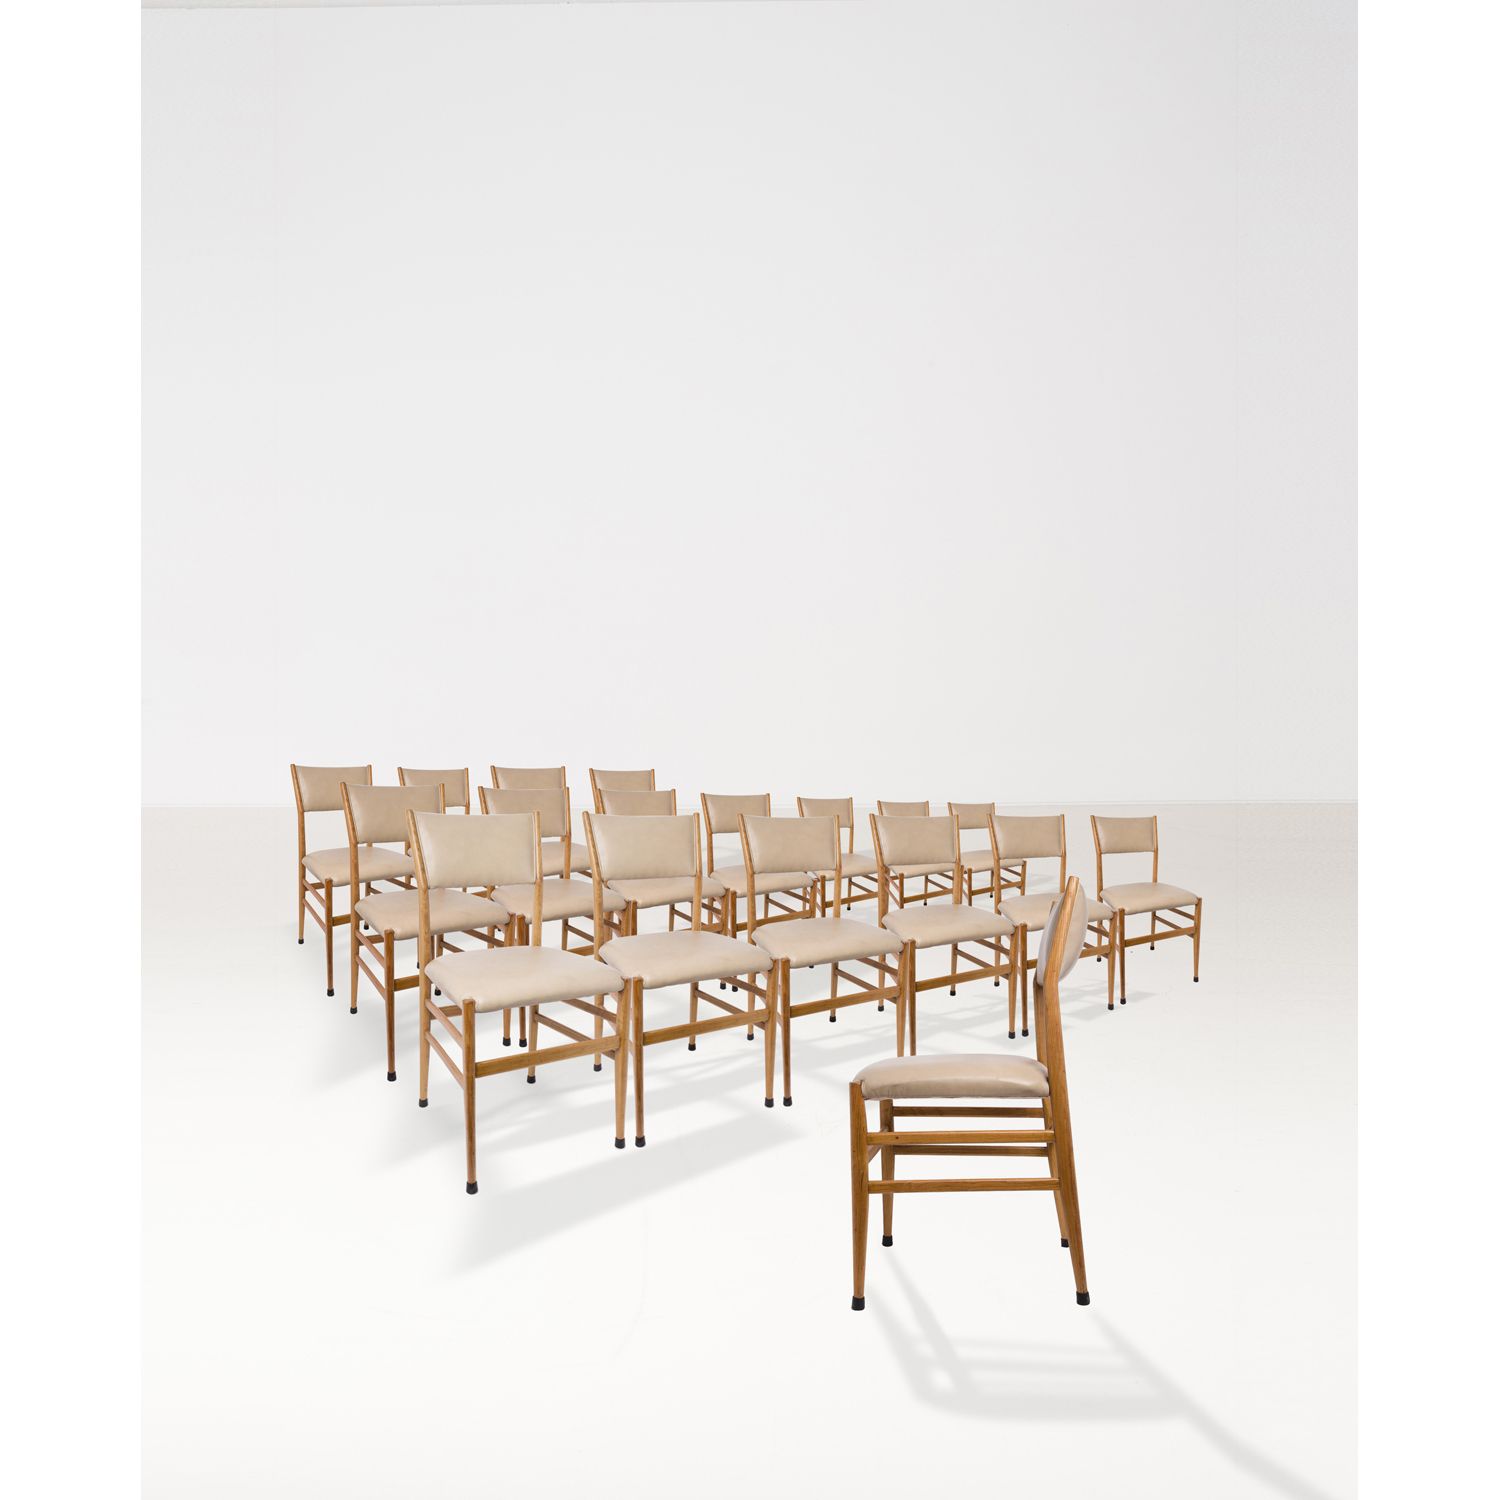 Null 吉奥-庞蒂 (1891-1979)

型号 643-3

十八张椅子的套间

白蜡和仿皮

卡西纳版

1954年左右创建的模型

高83×宽43×深&hellip;